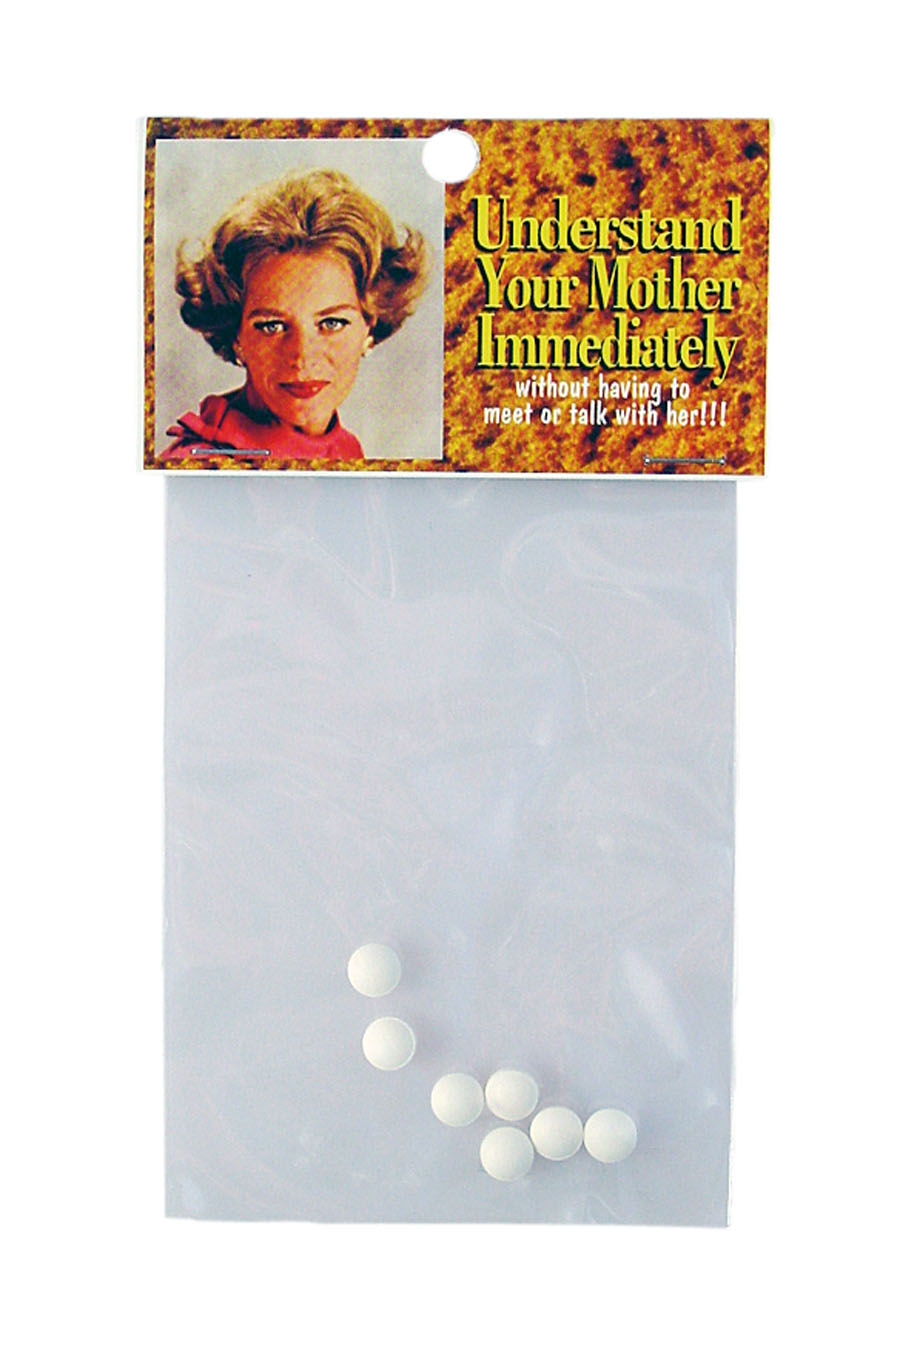 As pílulas utópicas de Dana Wyse: elas prometem família, inteligência e um passado feliz